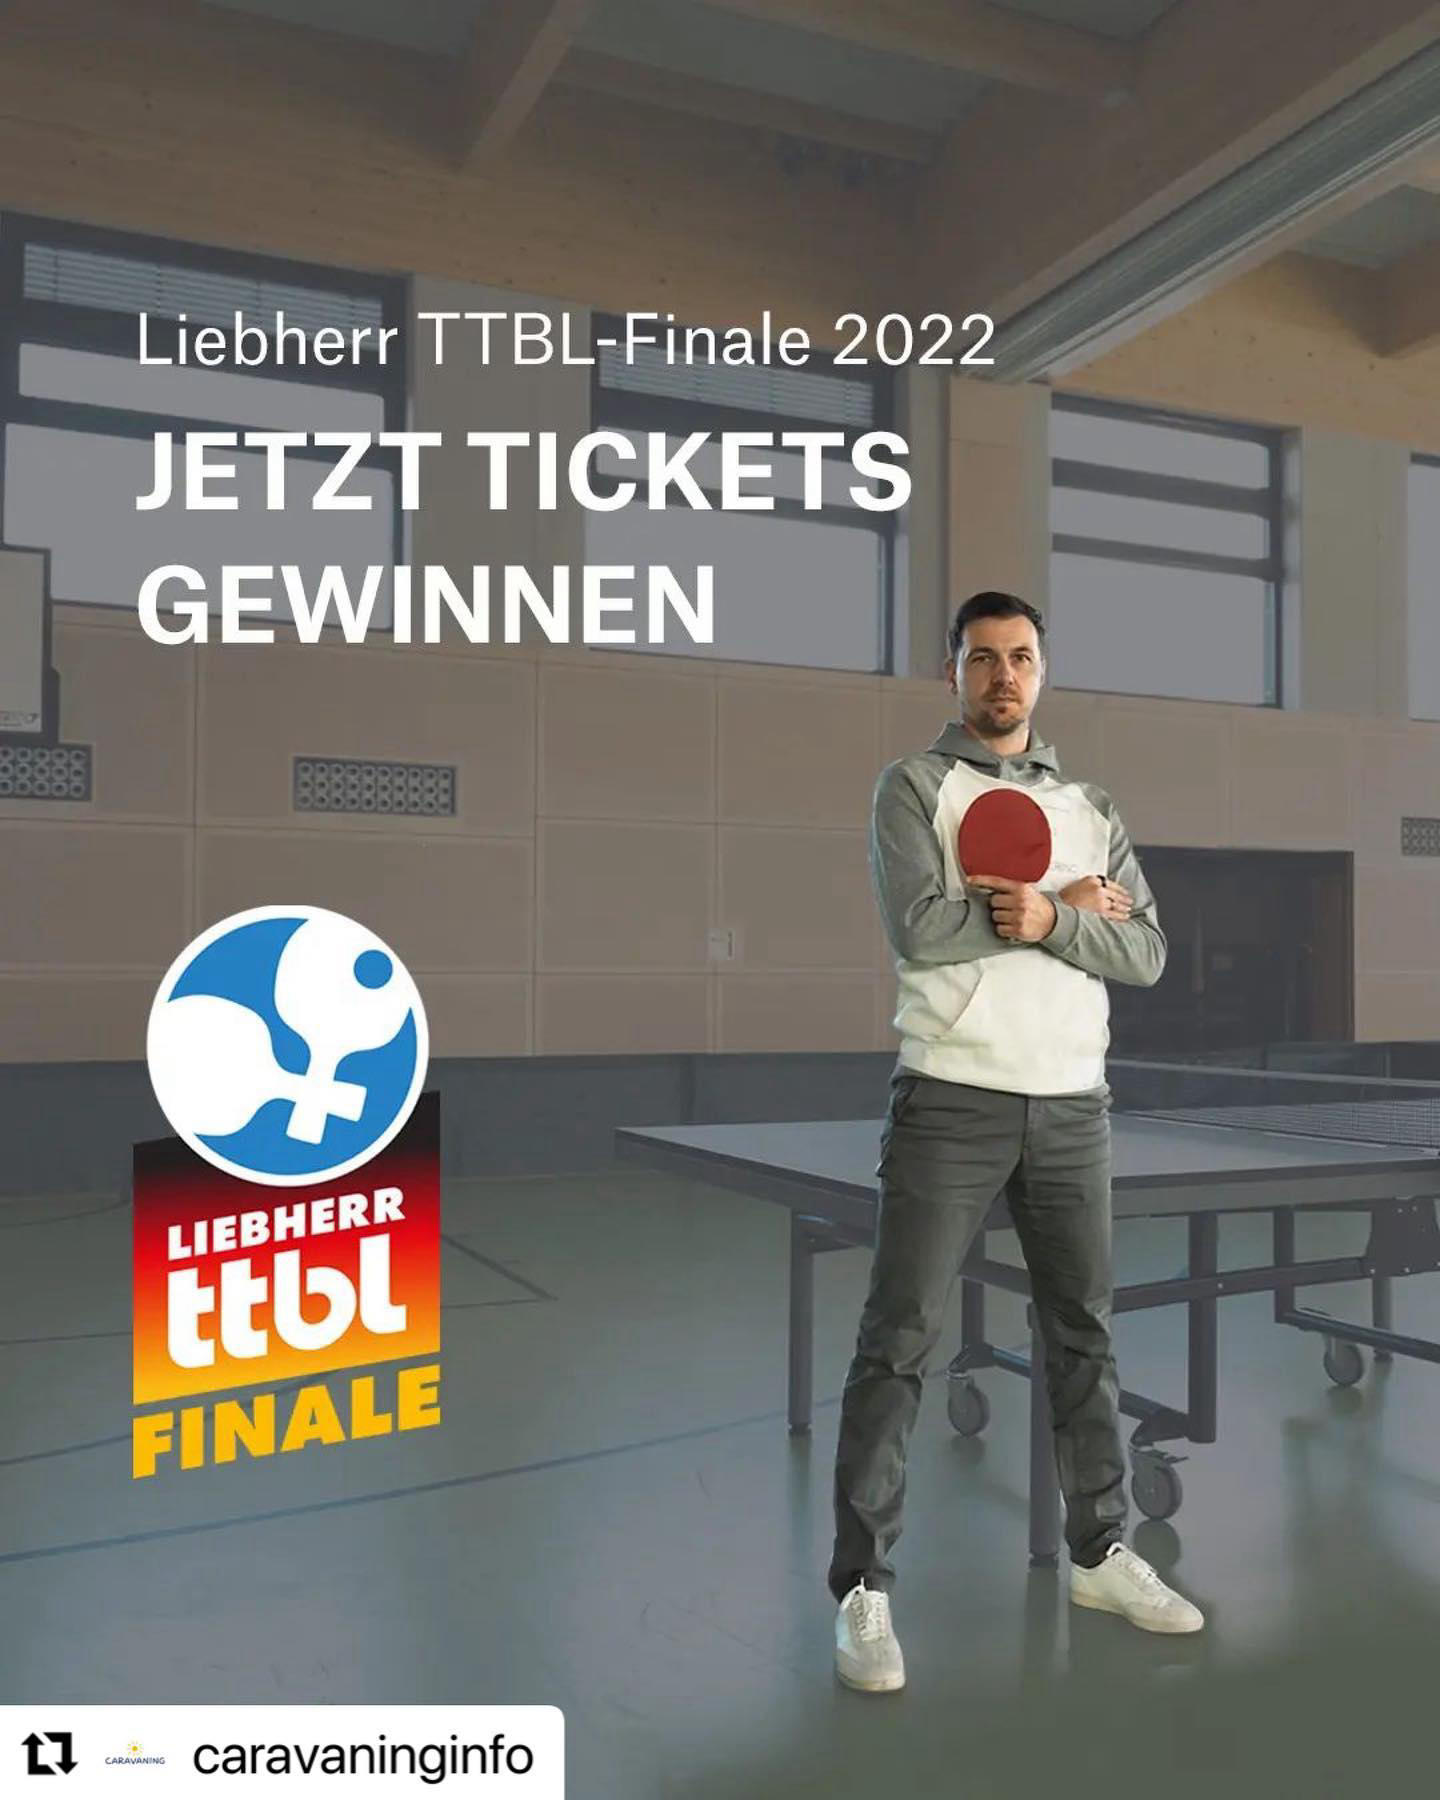 Timo Boll - Geht auf #caravaninginfo und gewinnt Final-Tickets